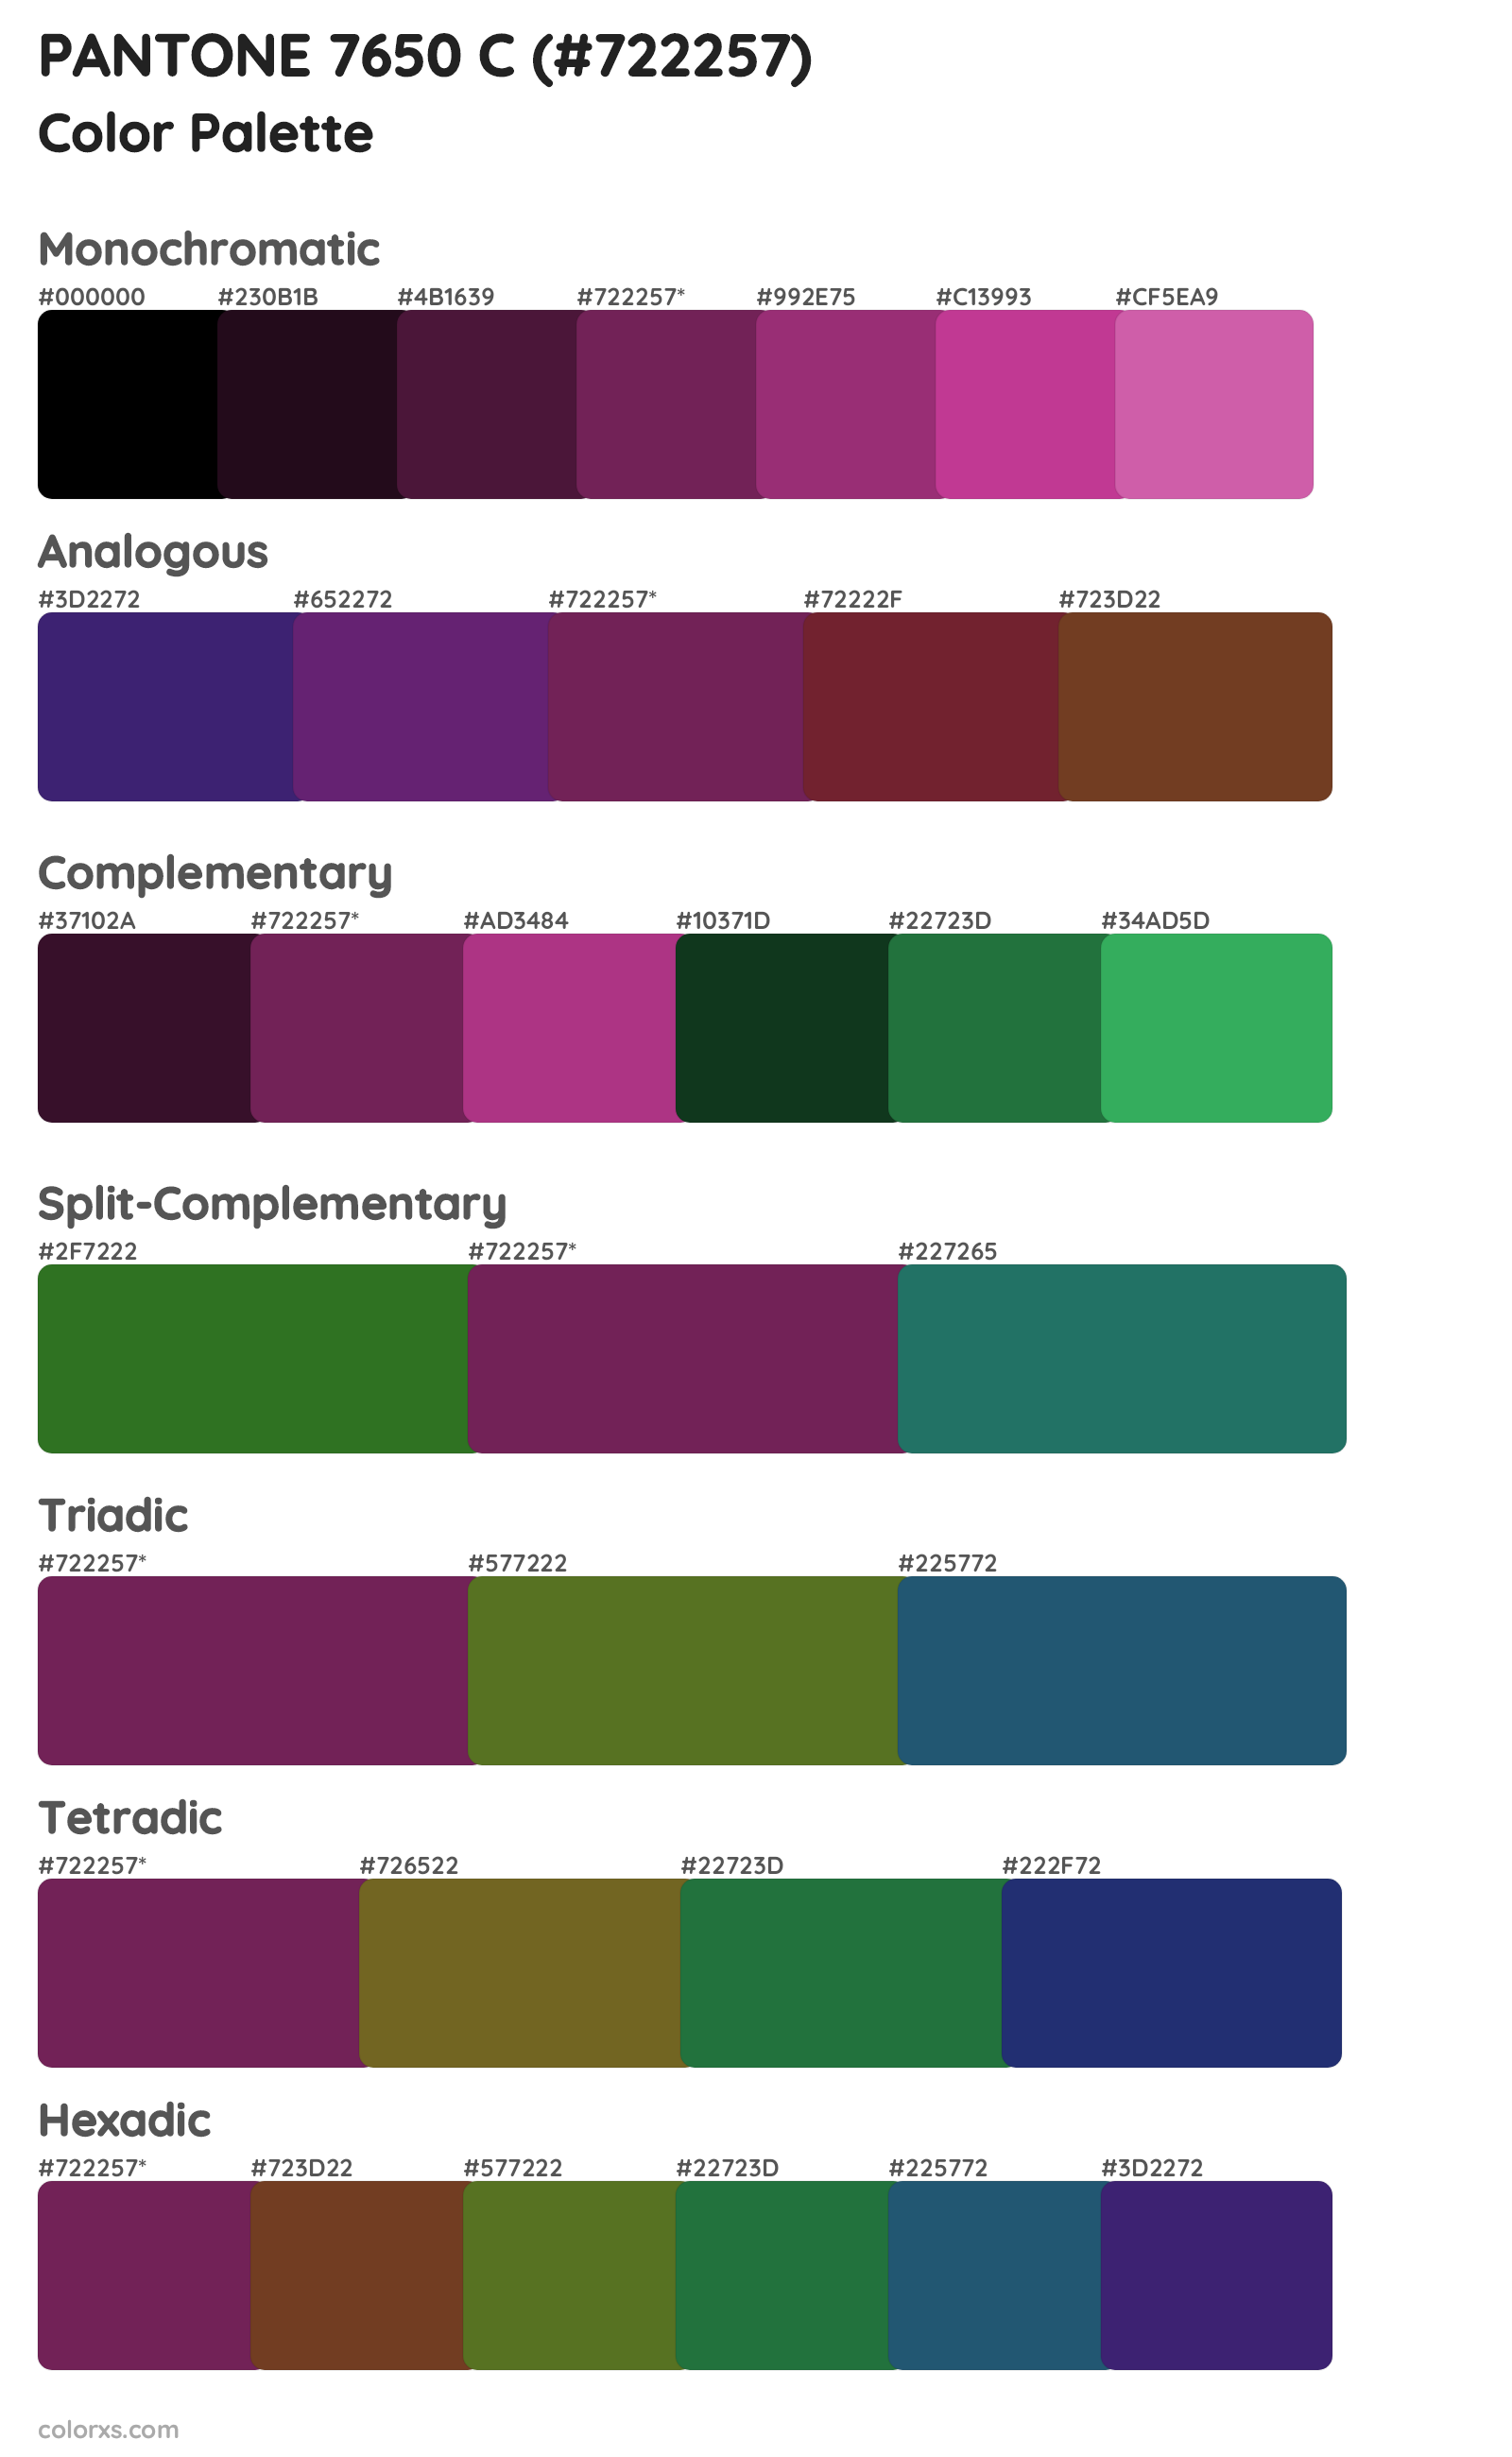 PANTONE 7650 C Color Scheme Palettes